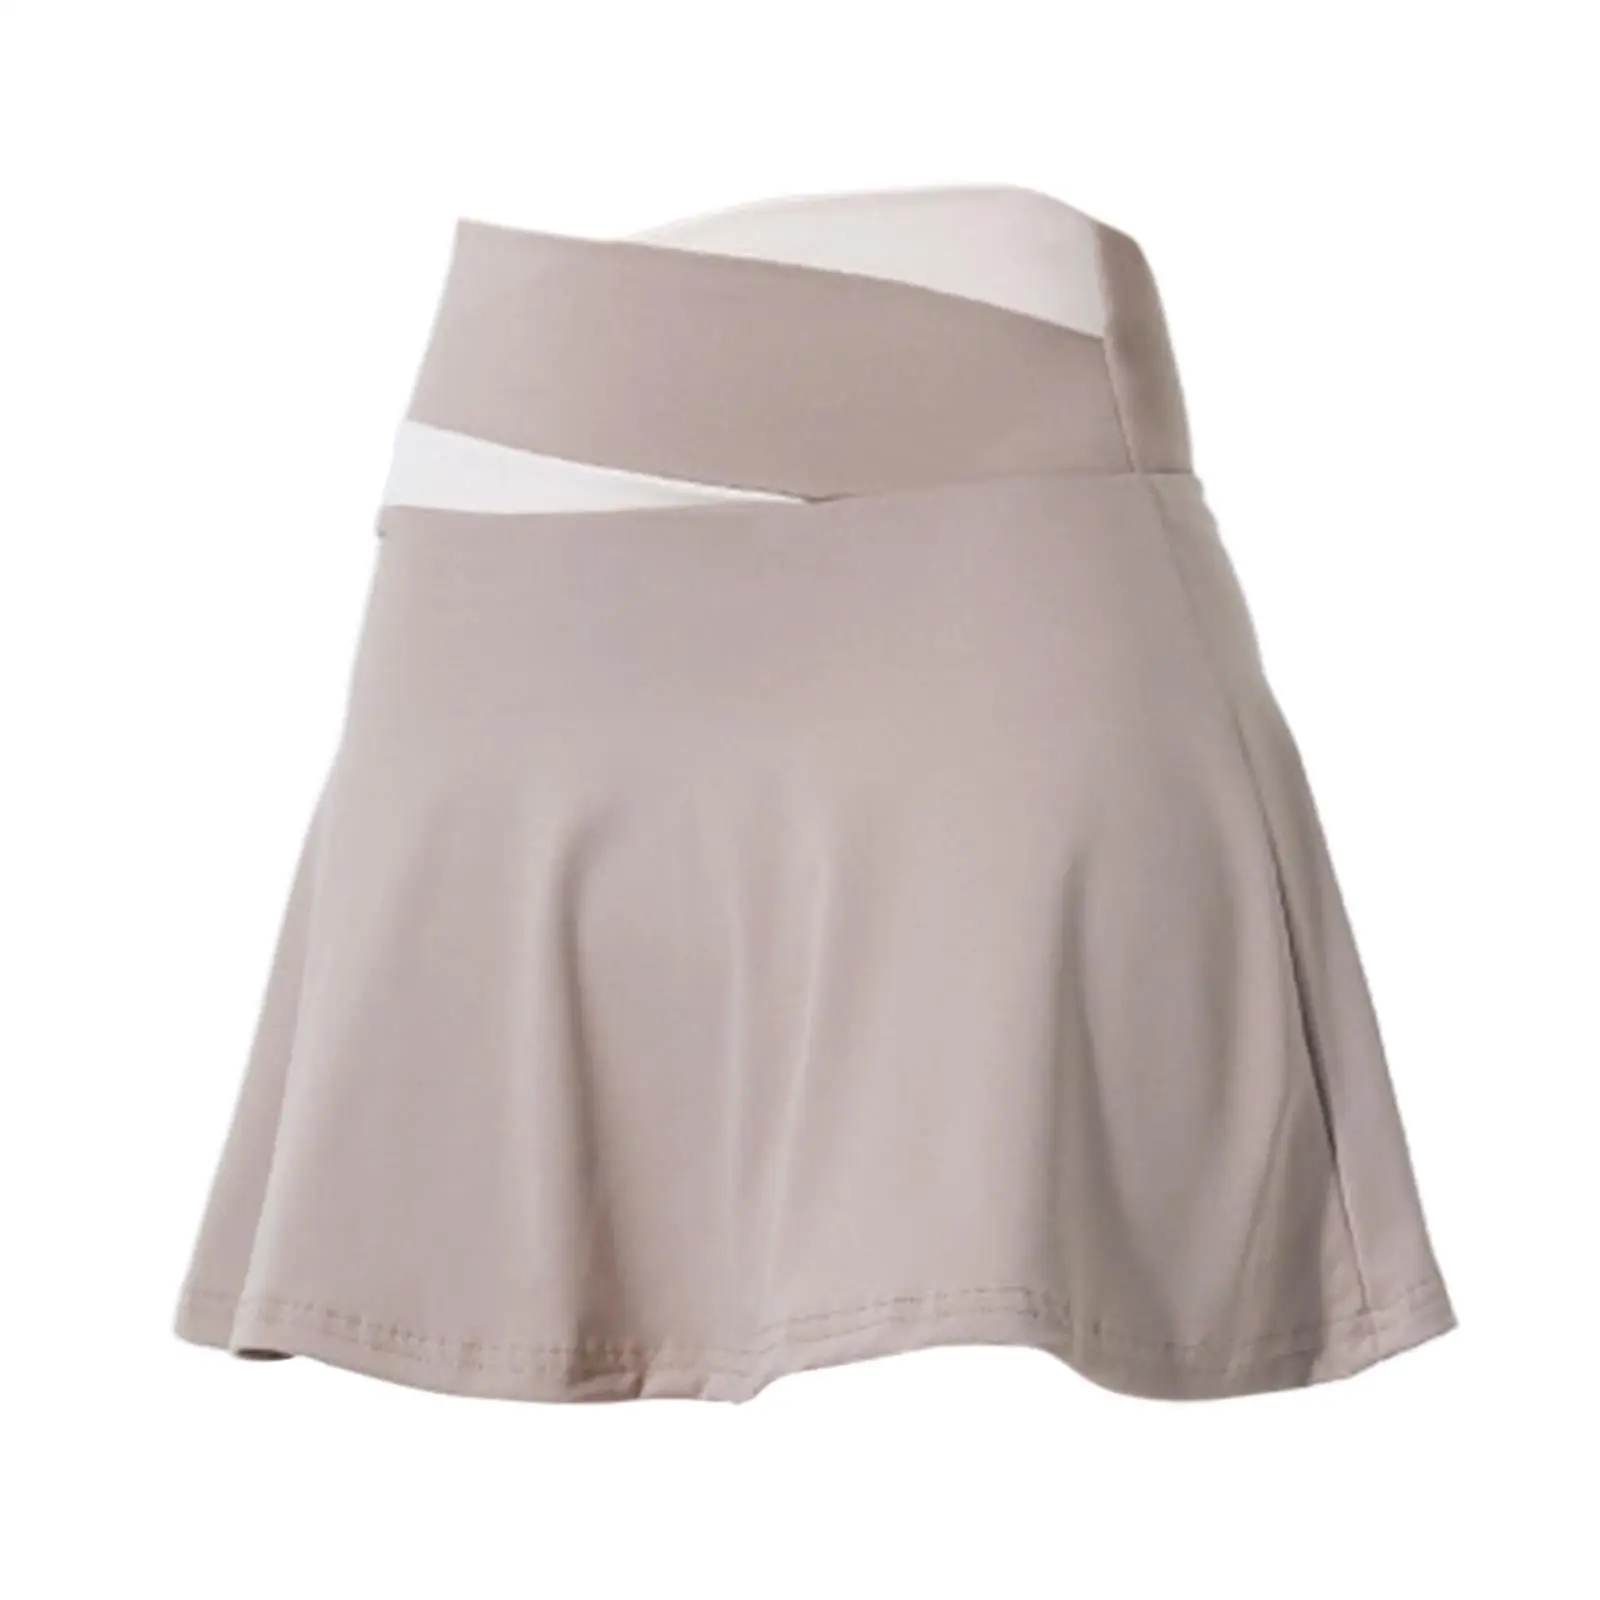 Tennis Skirt Short Skirt High Waist Cute Activewear Golf Skorts Skirt Womens Skirt for Running Summer Sport